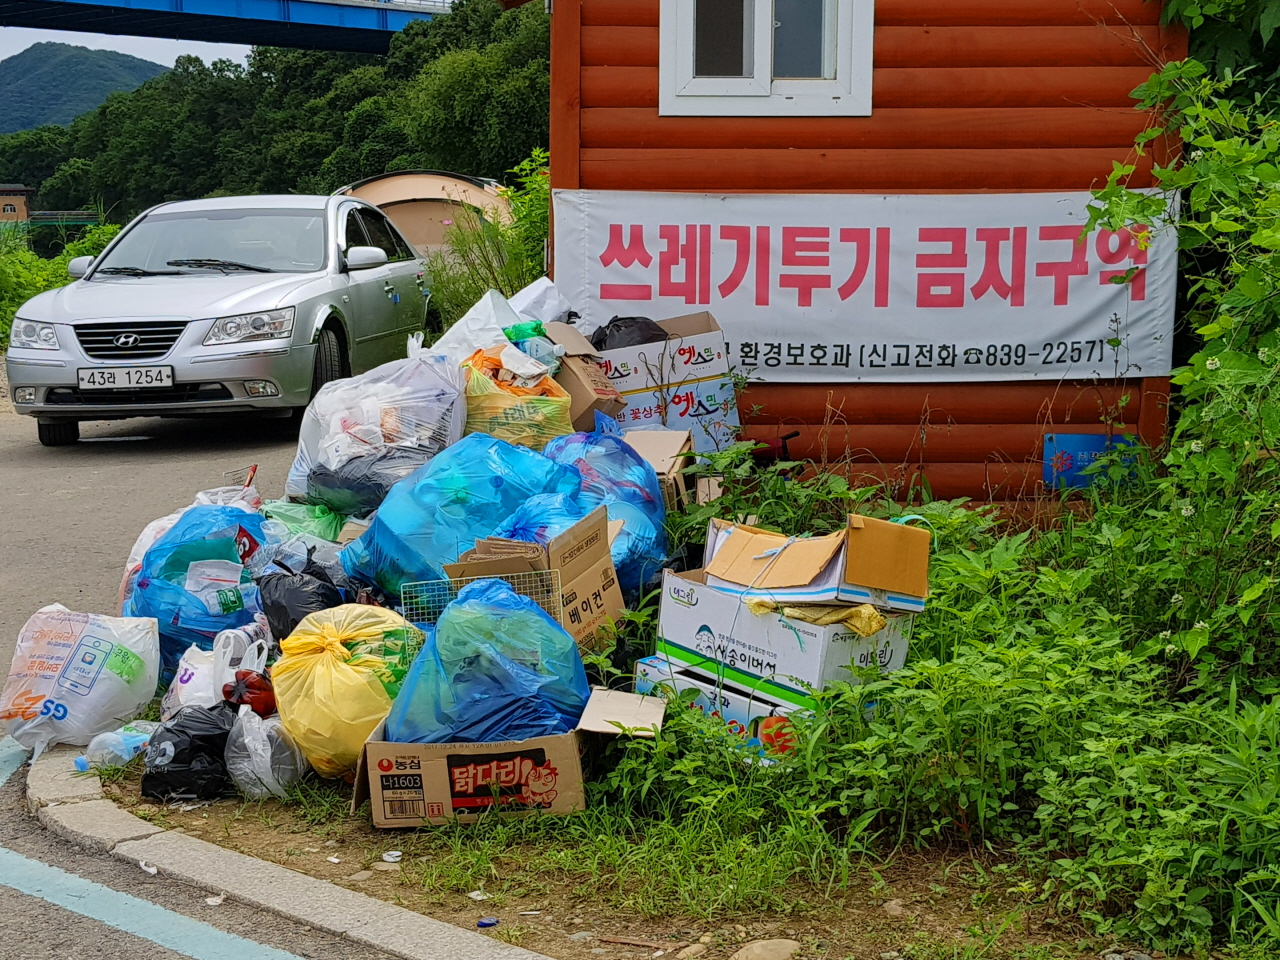 주상절리 주변에 행락객들이 버린 쓰레기(8월 13일 촬영)